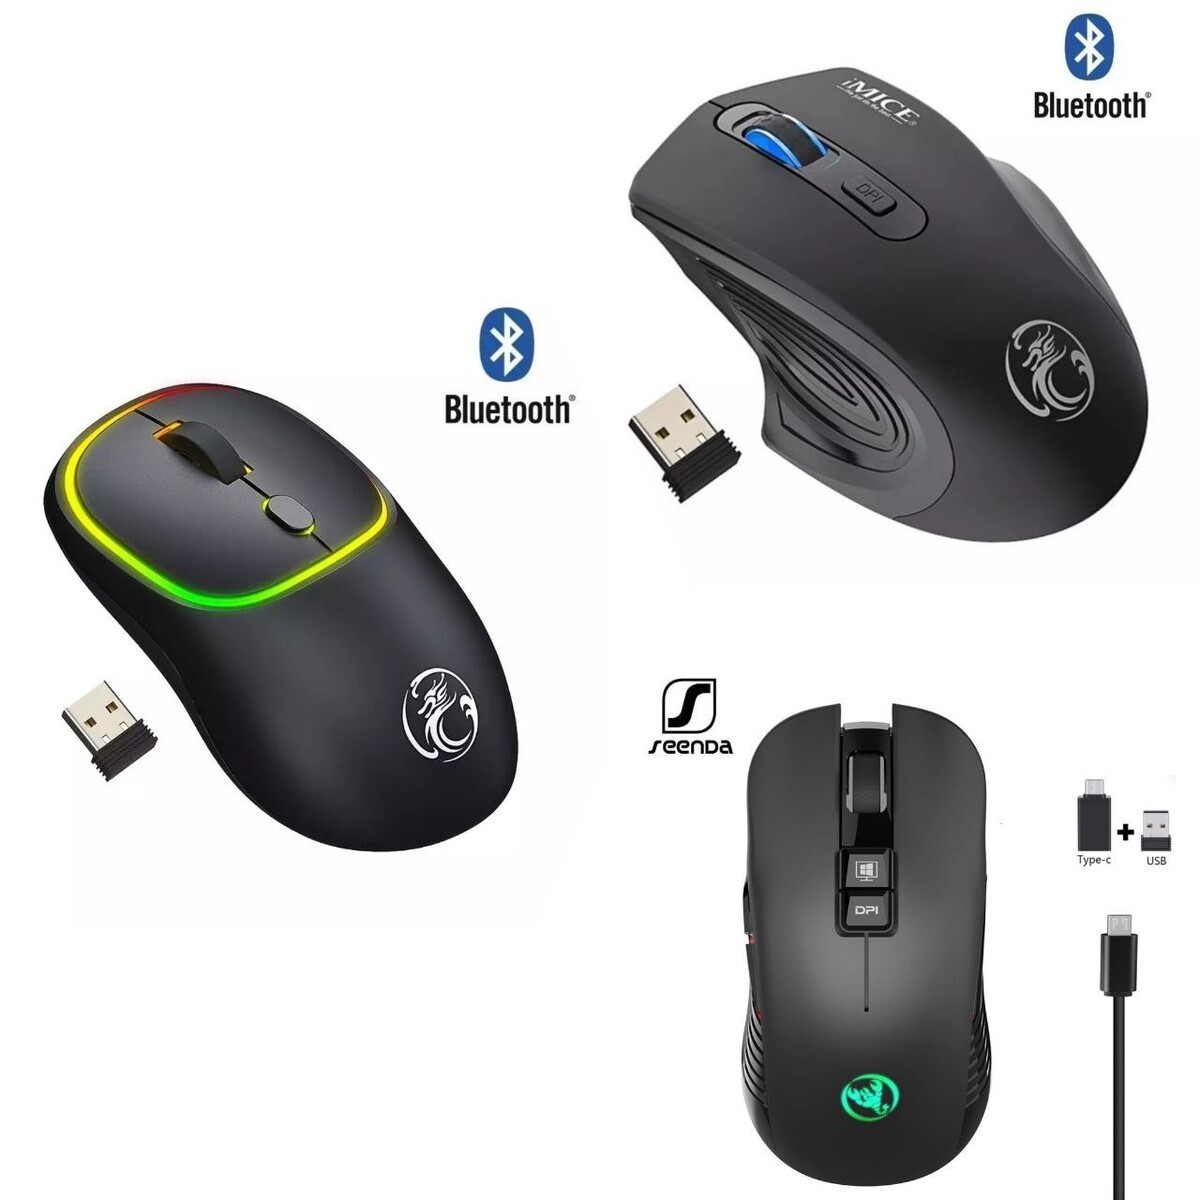 Мышь со встроенным Bluetooth. Мышка со встроенным Bluetooth. Клавиатура со встроенной мышкой. Мышка со встроенным кликером. Беспроводная мышь на батарейках